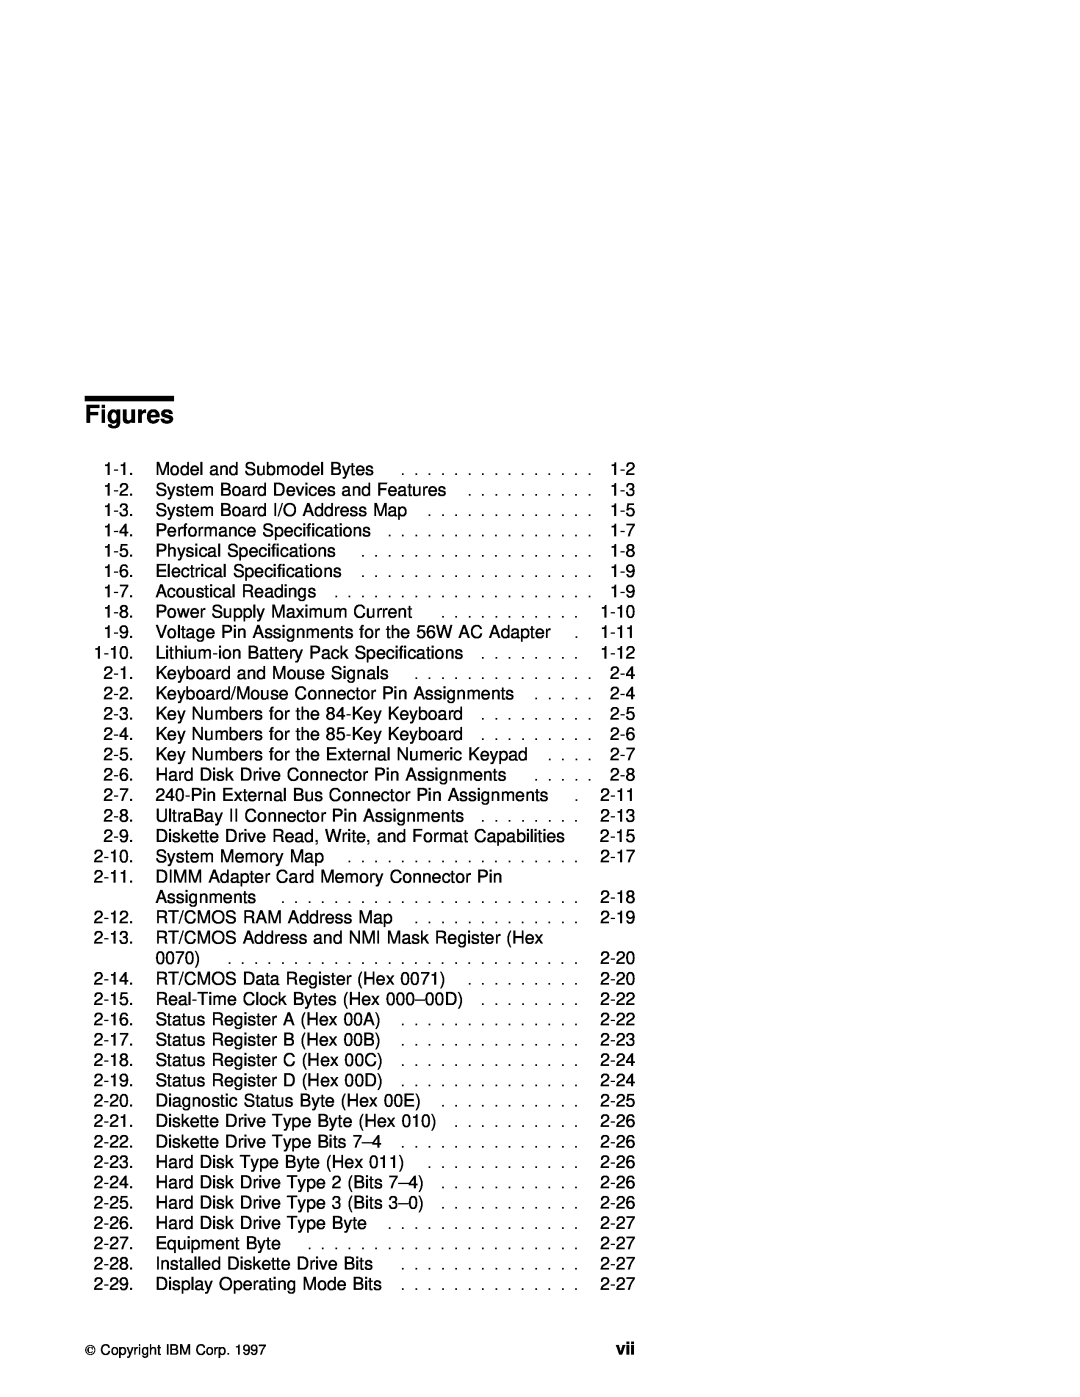 IBM 770 manual Figures, Supply, Maximum, Assignments 